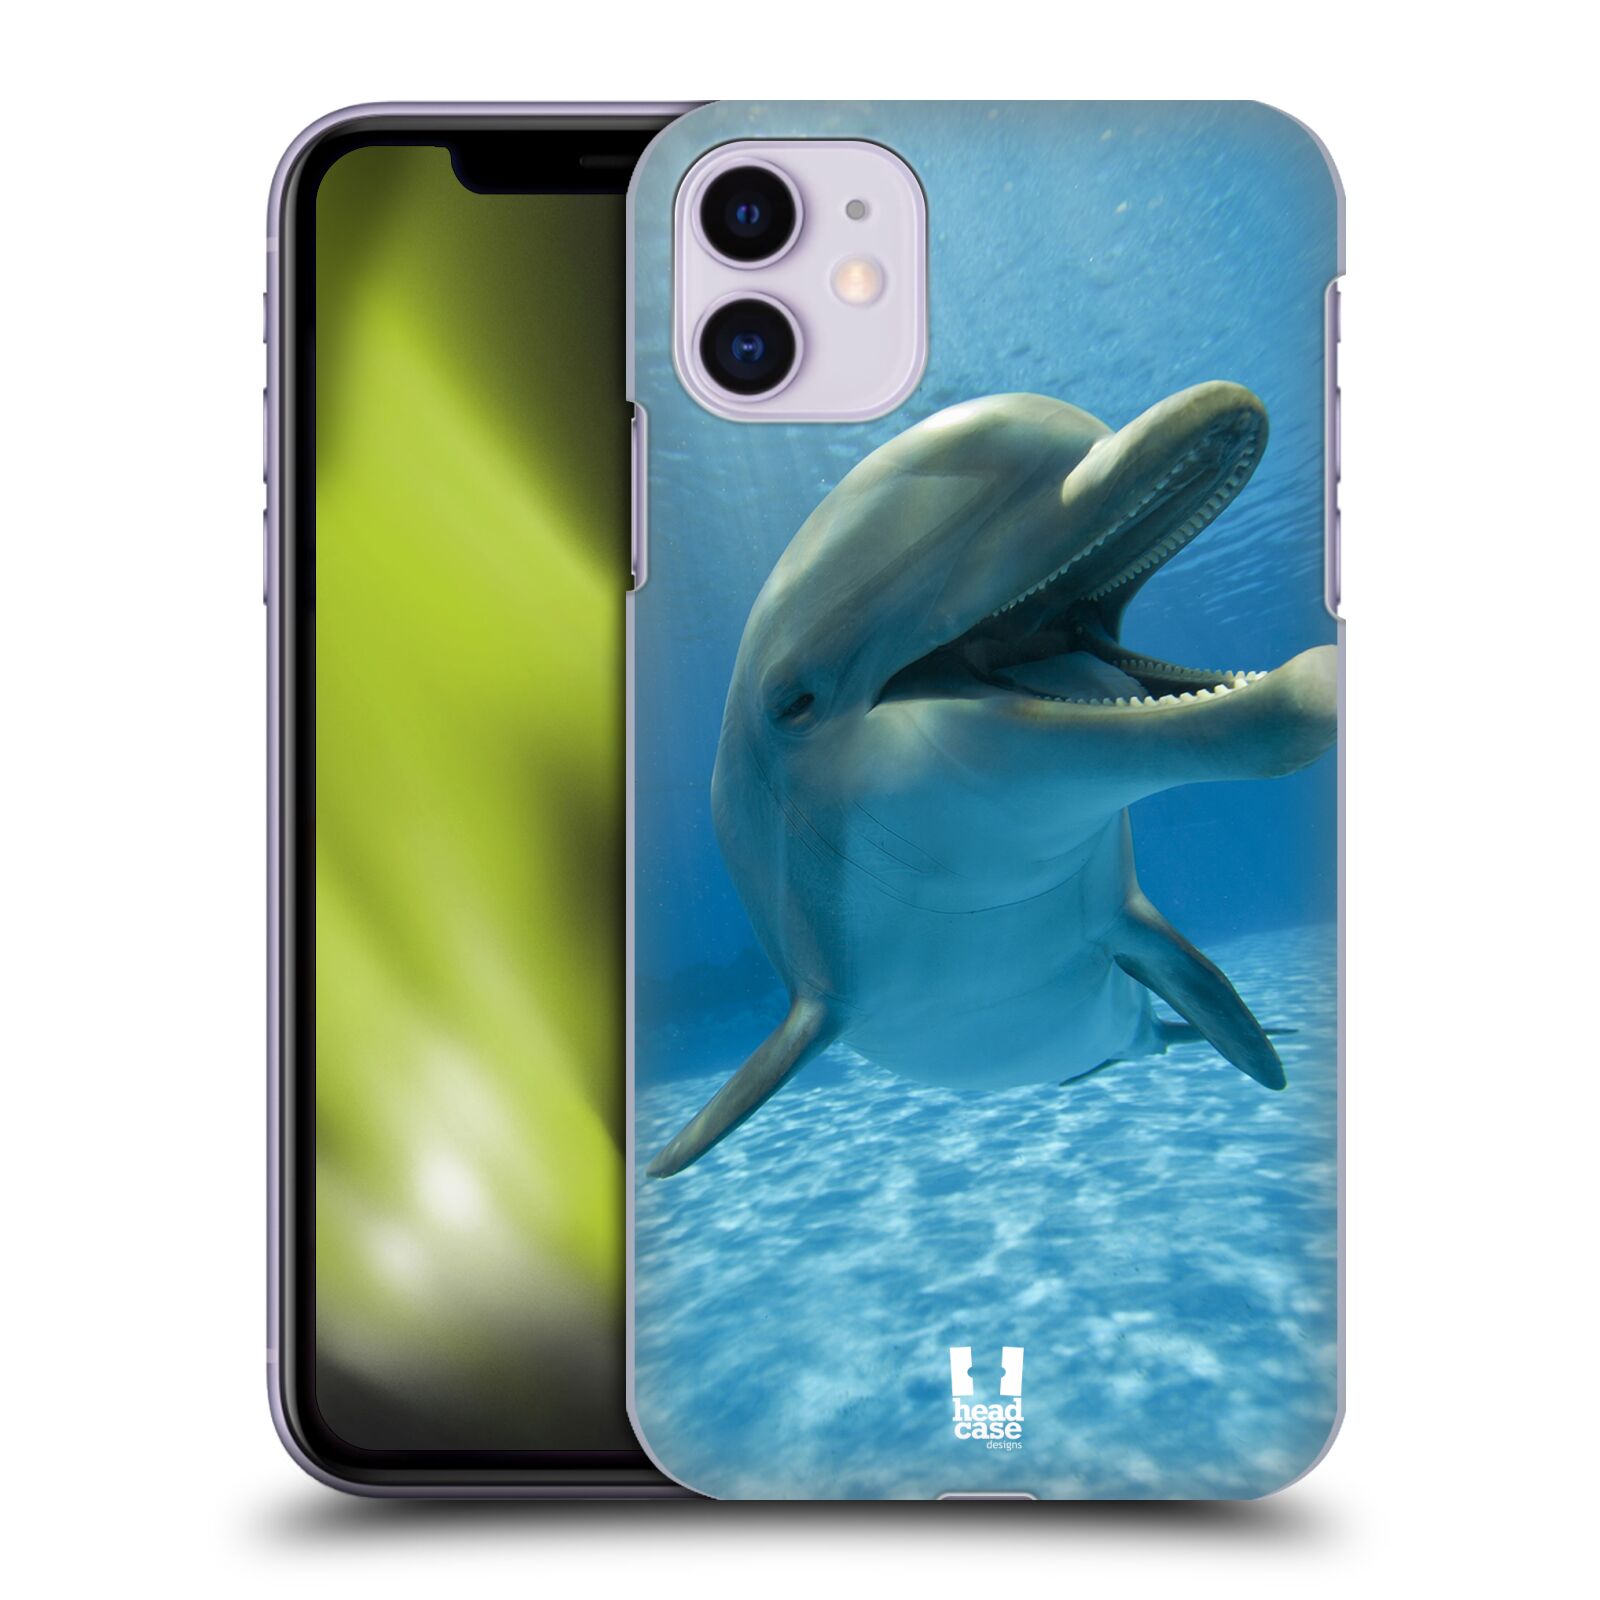 Zadní obal pro mobil Apple Iphone 11 - HEAD CASE - Svět zvířat delfín v moři